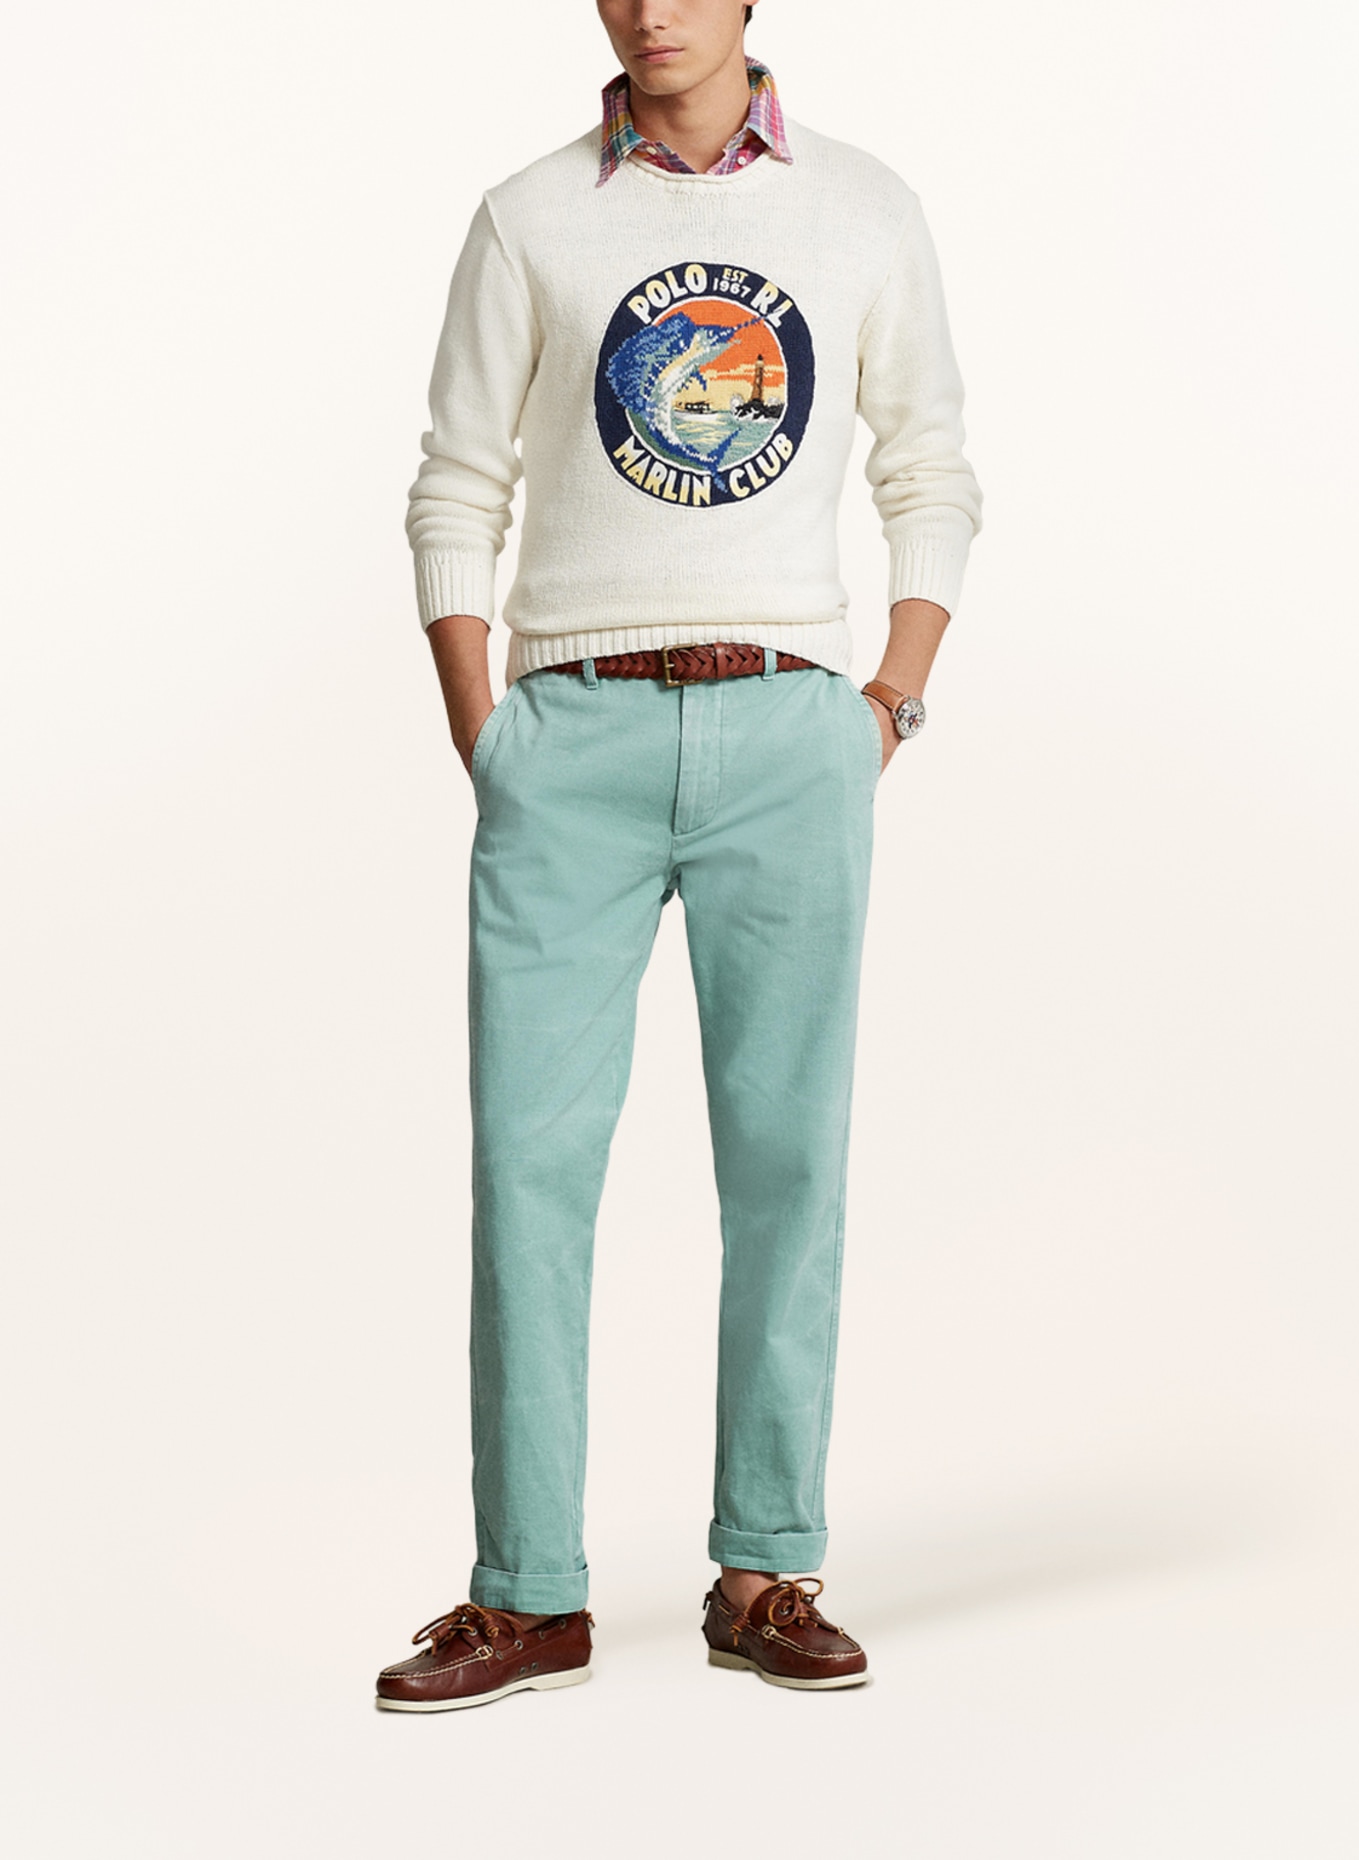 POLO RALPH LAUREN Pullover mit Leinen, Farbe: ECRU/ DUNKELBLAU/ ORANGE (Bild 2)